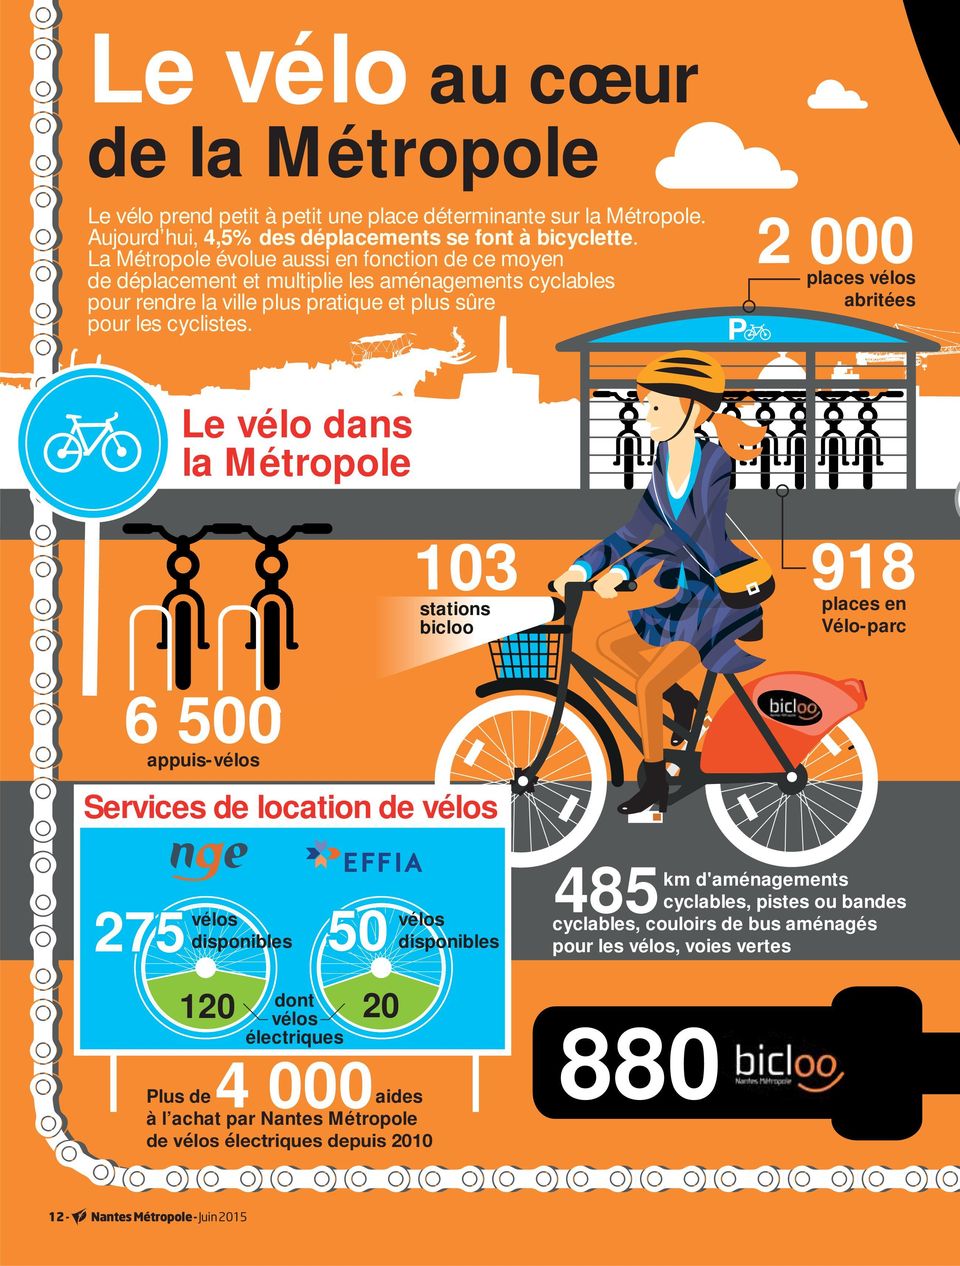 2 000 places vélos abritées Le vélo dans la Métropole 103 stations bicloo 918 places en Vélo-parc 6 500 appuis-vélos Services de location de vélos 275 vélos 50 disponibles 120 dont vélos